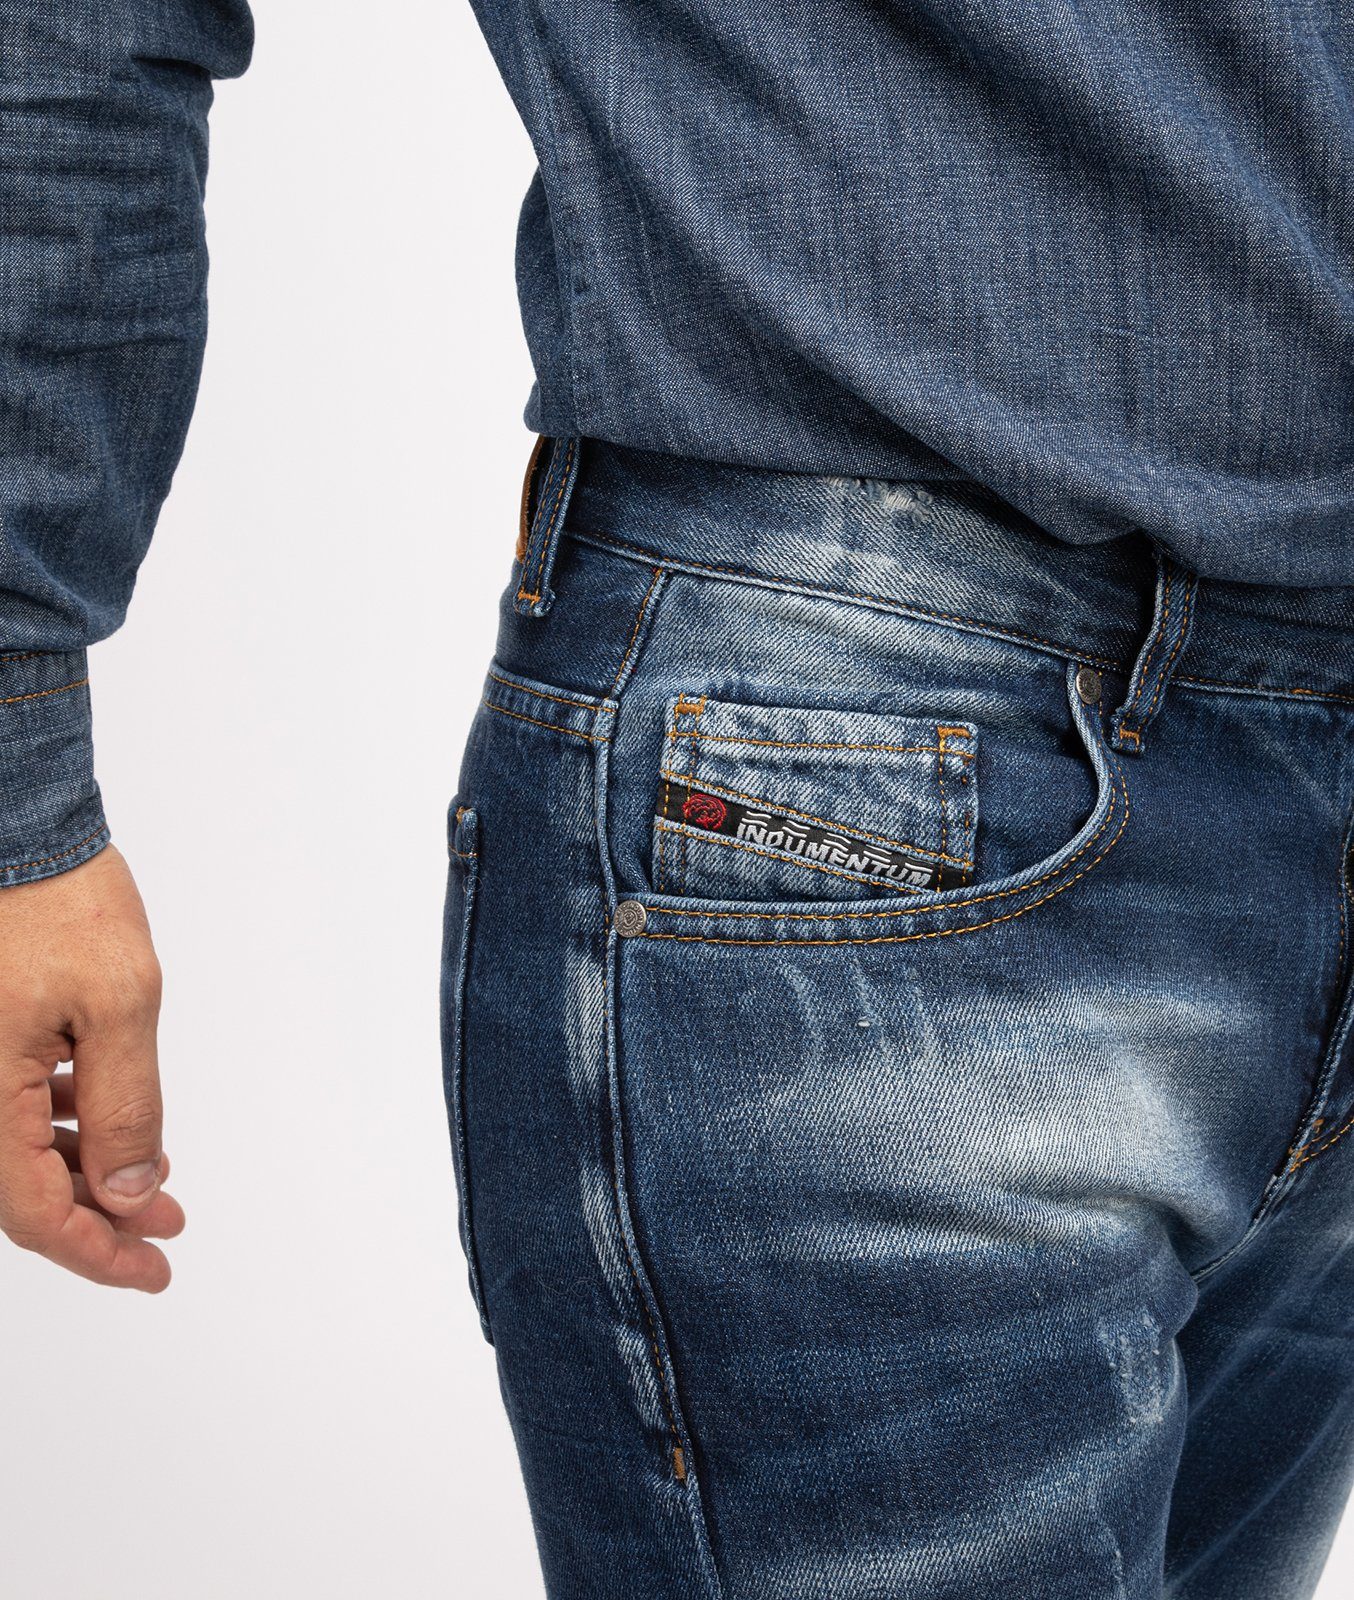 Indumentum Stonewashed Dunkelblau Jeans IR-503 Regular-fit-Jeans Herren